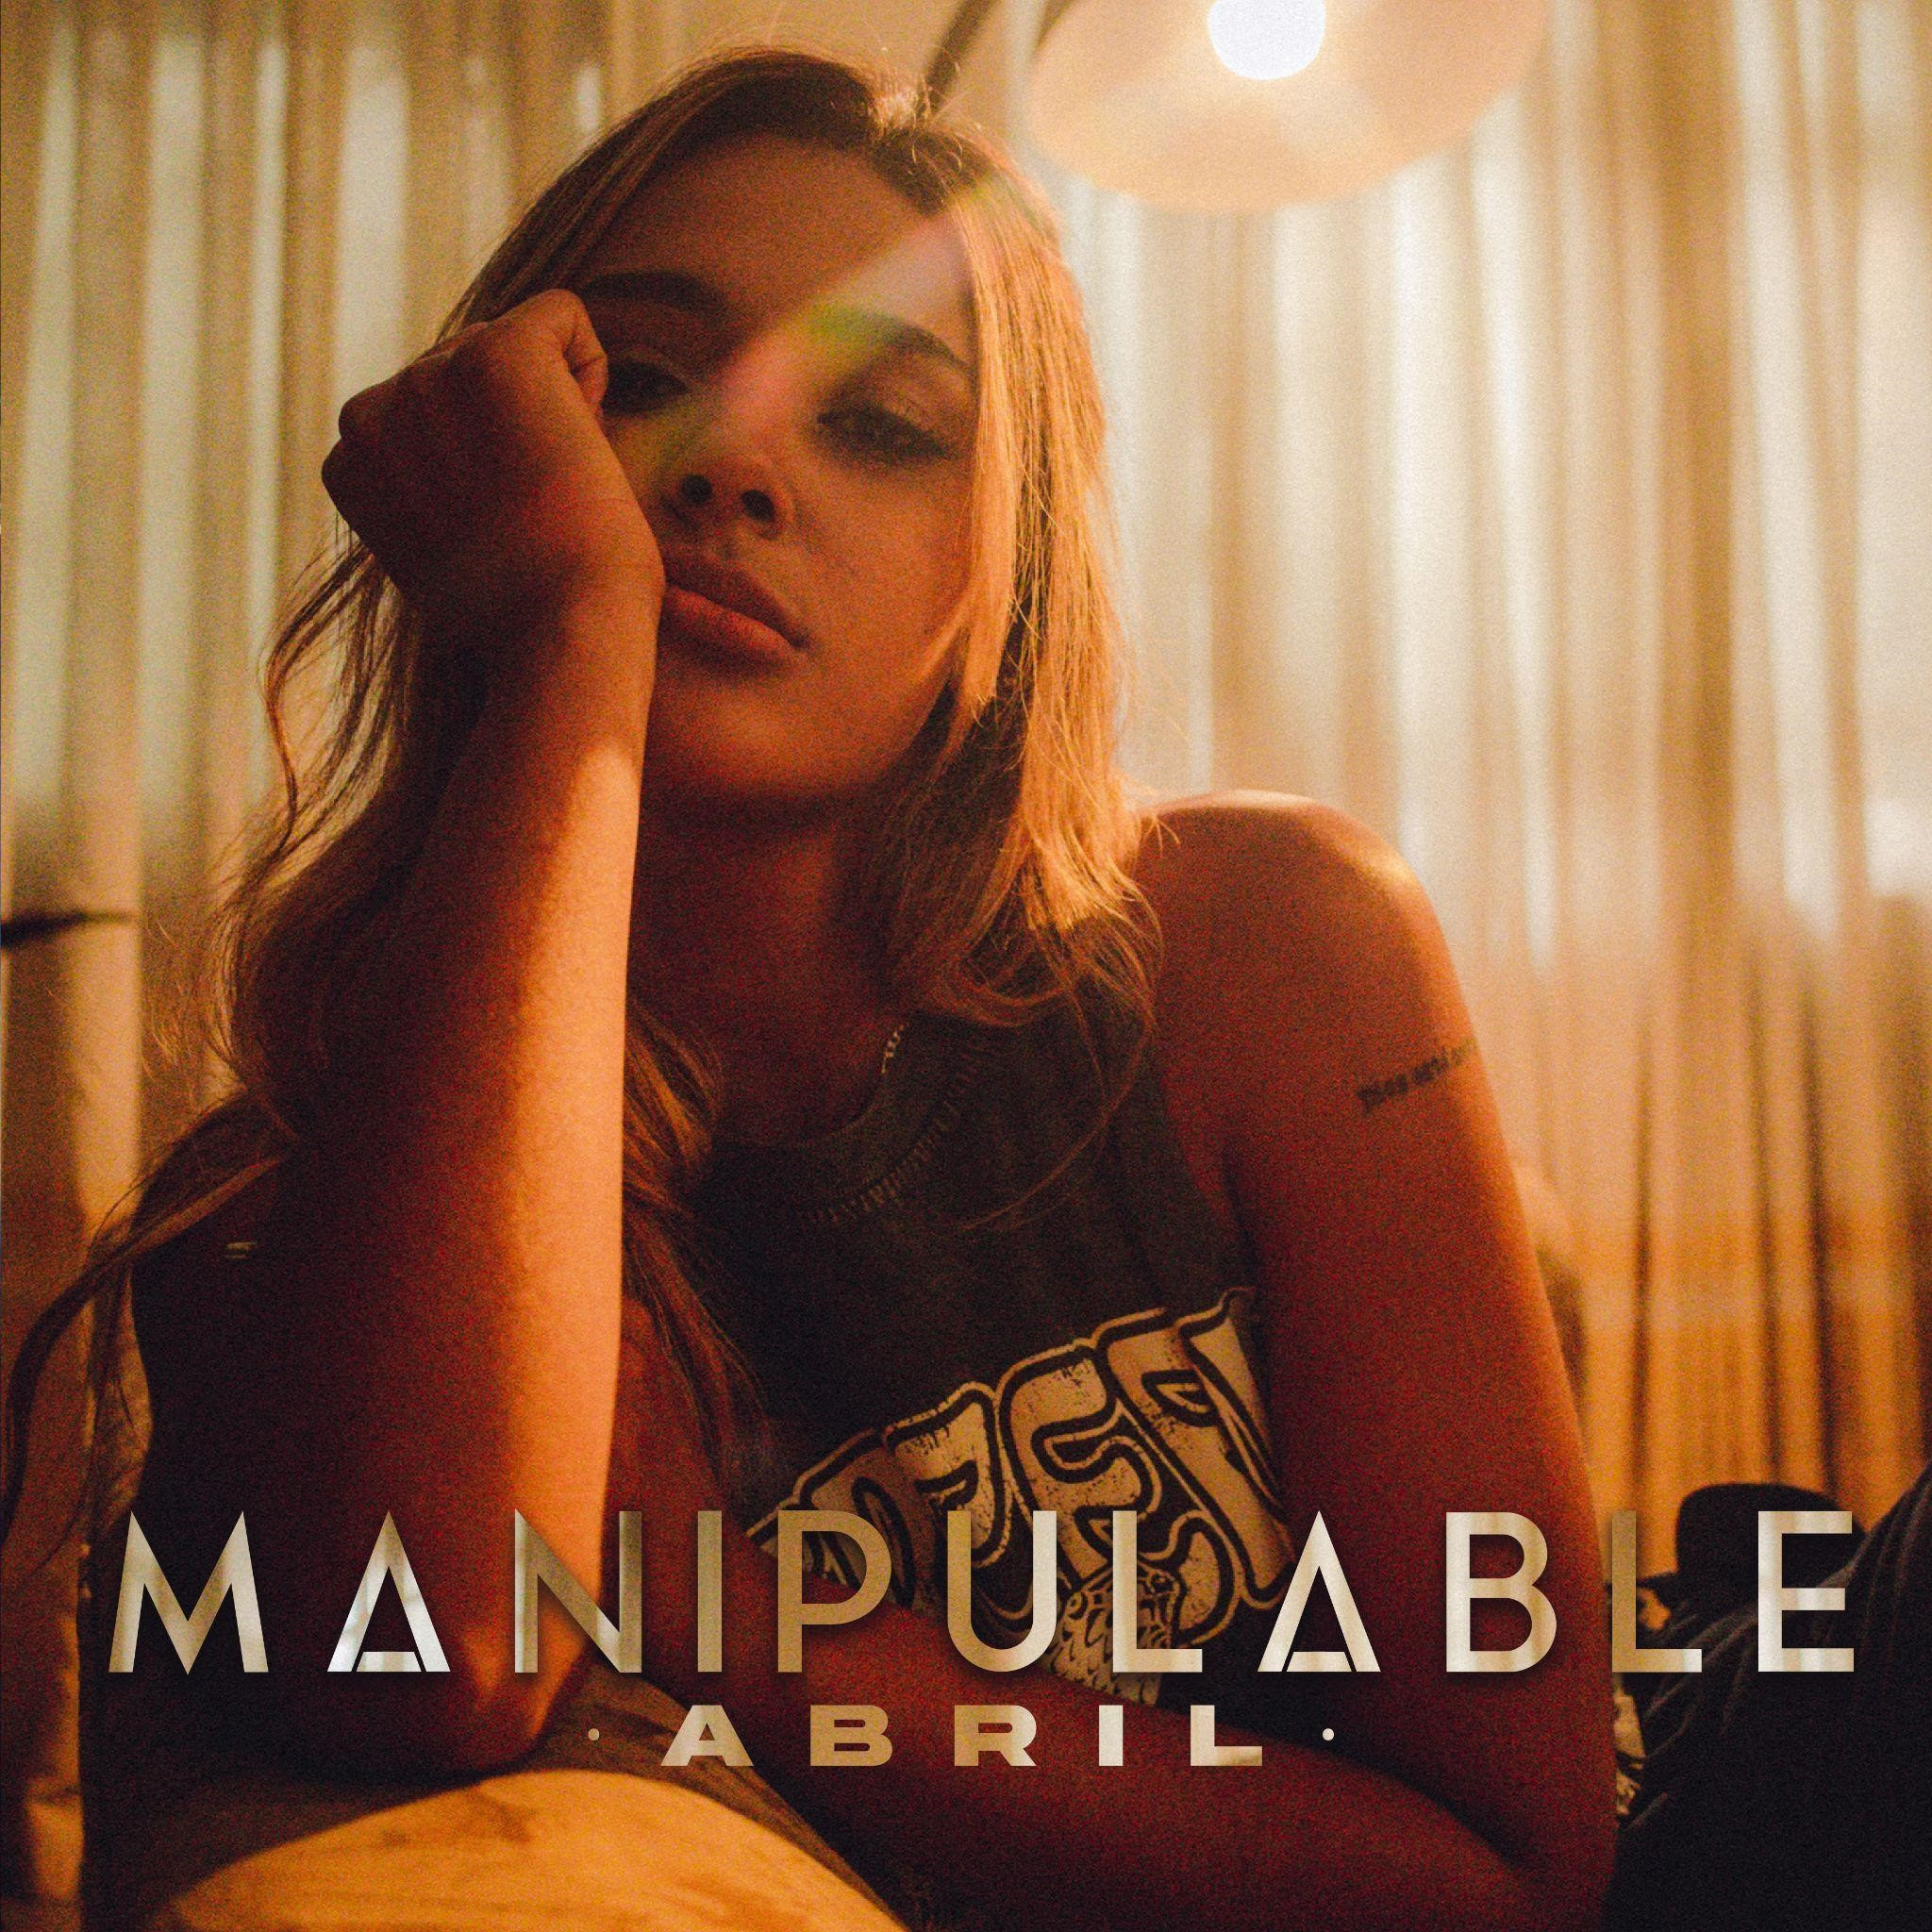 Abril estrena “Manipulable” su primer canción, junto a Royalty Records la nueva disquera de Maluma